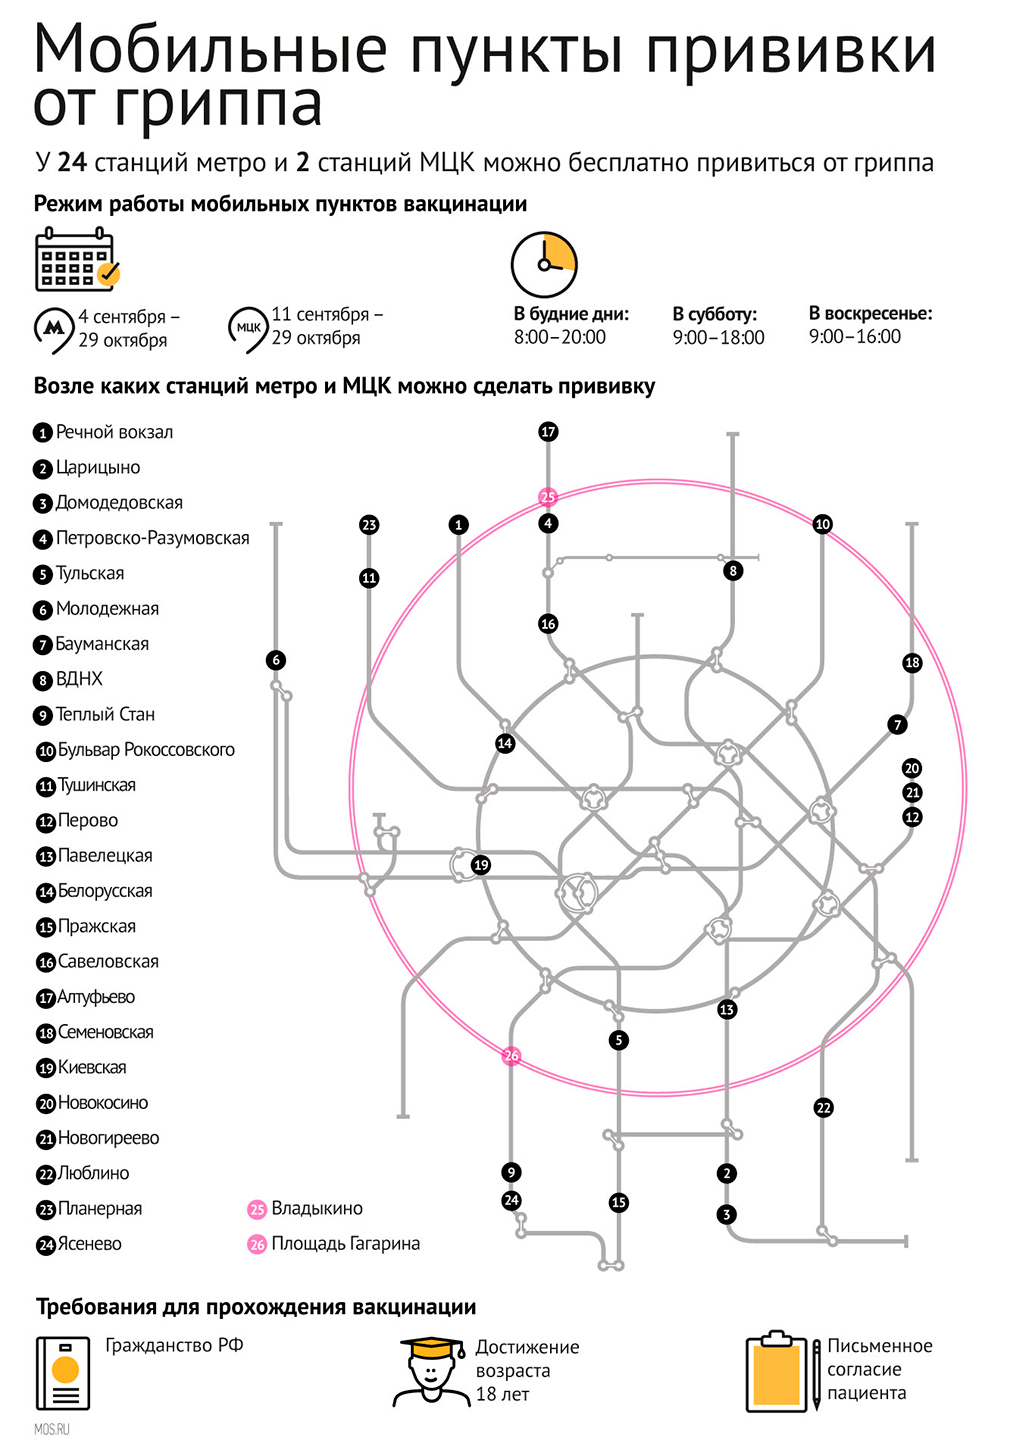 Прививки от гриппа 2017 возле метро: какая вакцинация, адреса на карте Москвы, график работы